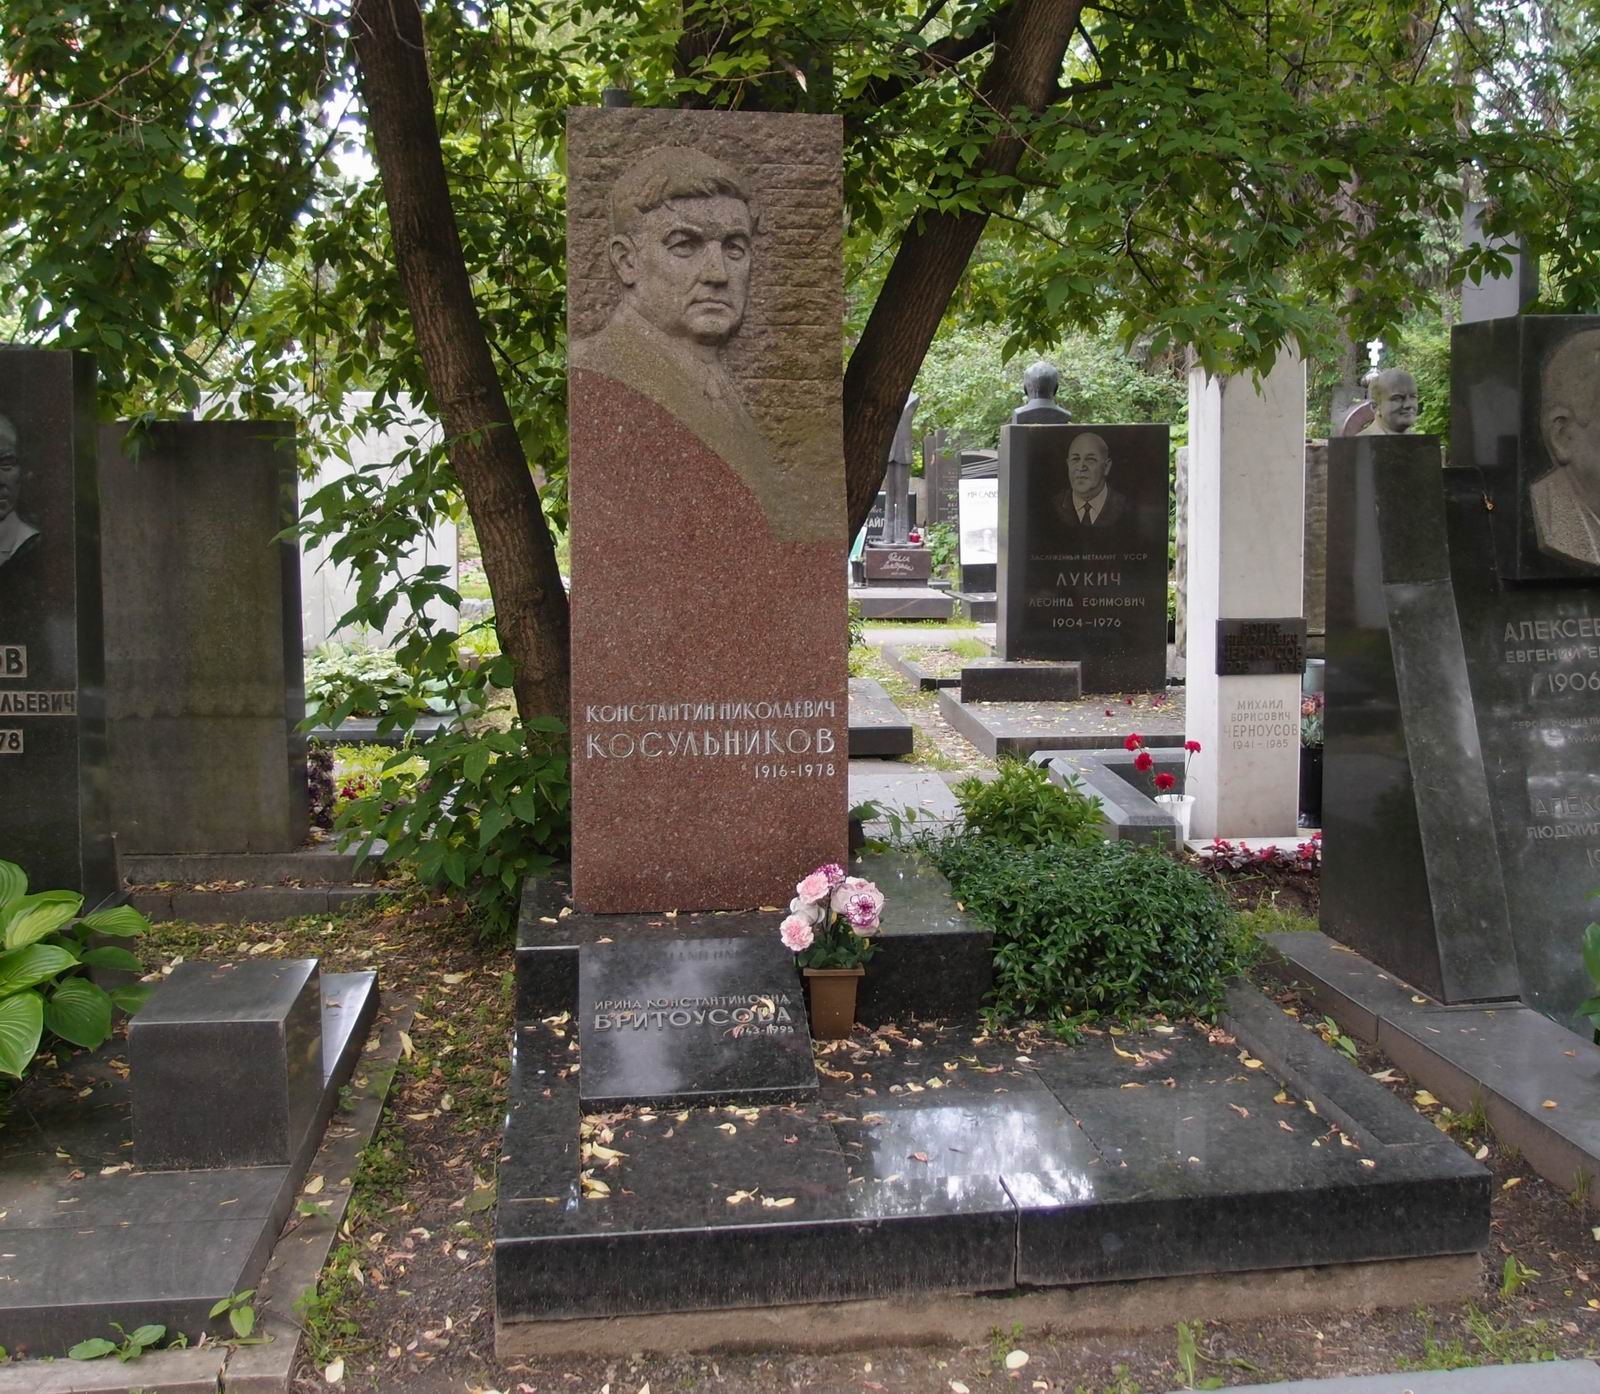 Памятник на могиле Косульникова К.Н. (1916-1978), ск. Б.Едунов, арх. М.Насекин, на Новодевичьем кладбище (9-4-3).